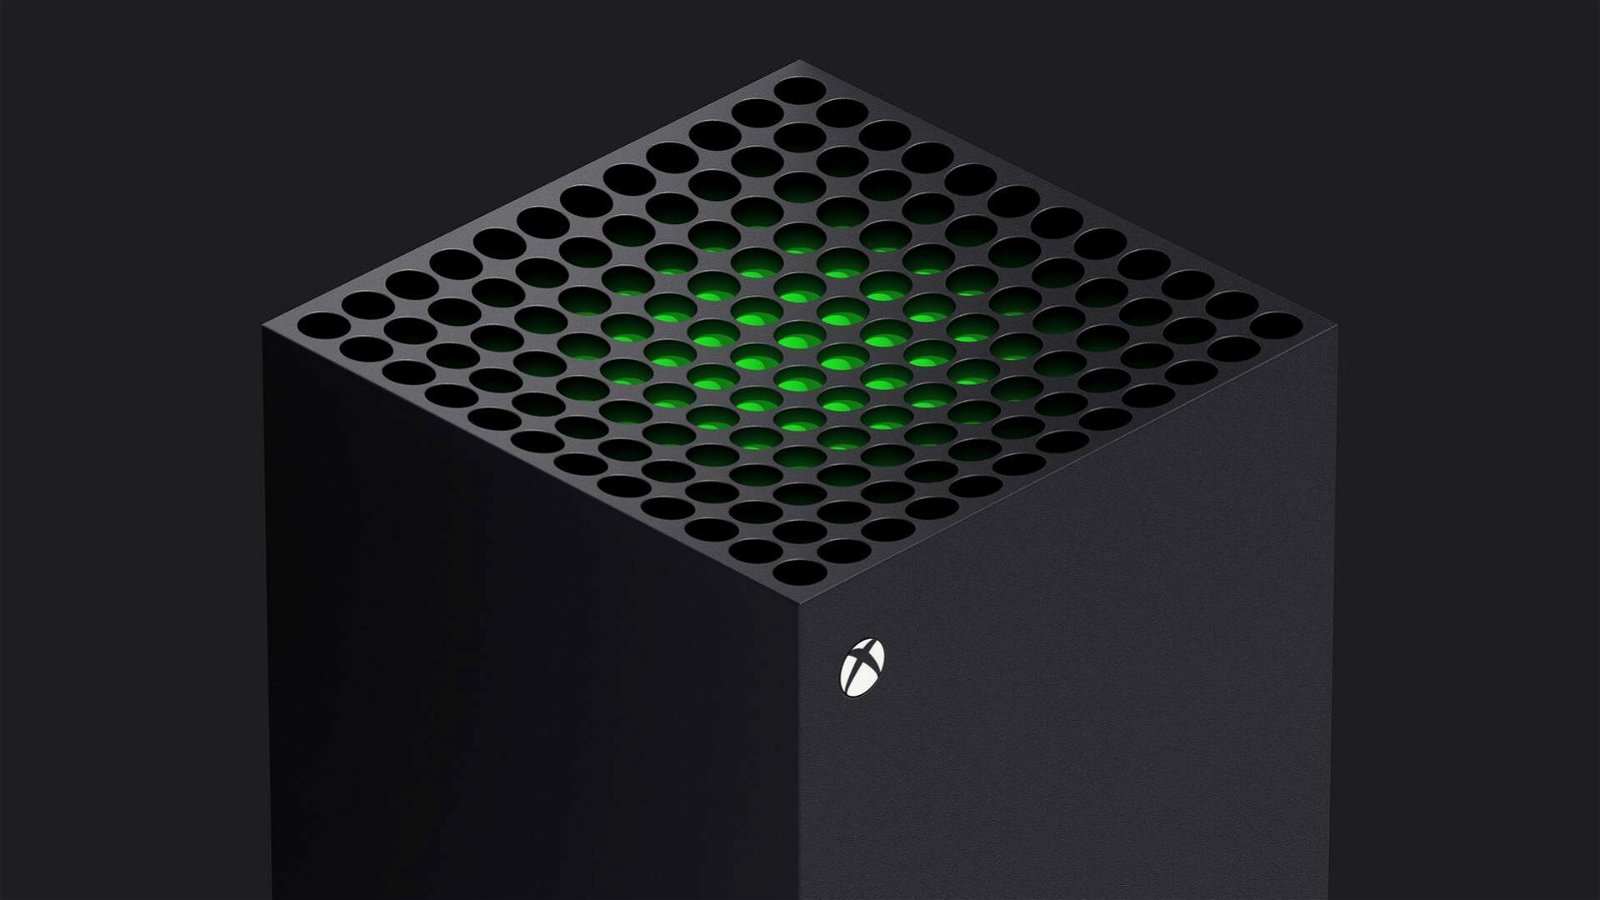 Immagine di Xbox Series X disponibile ora su Amazon! [IN AGGIORNAMENTO]